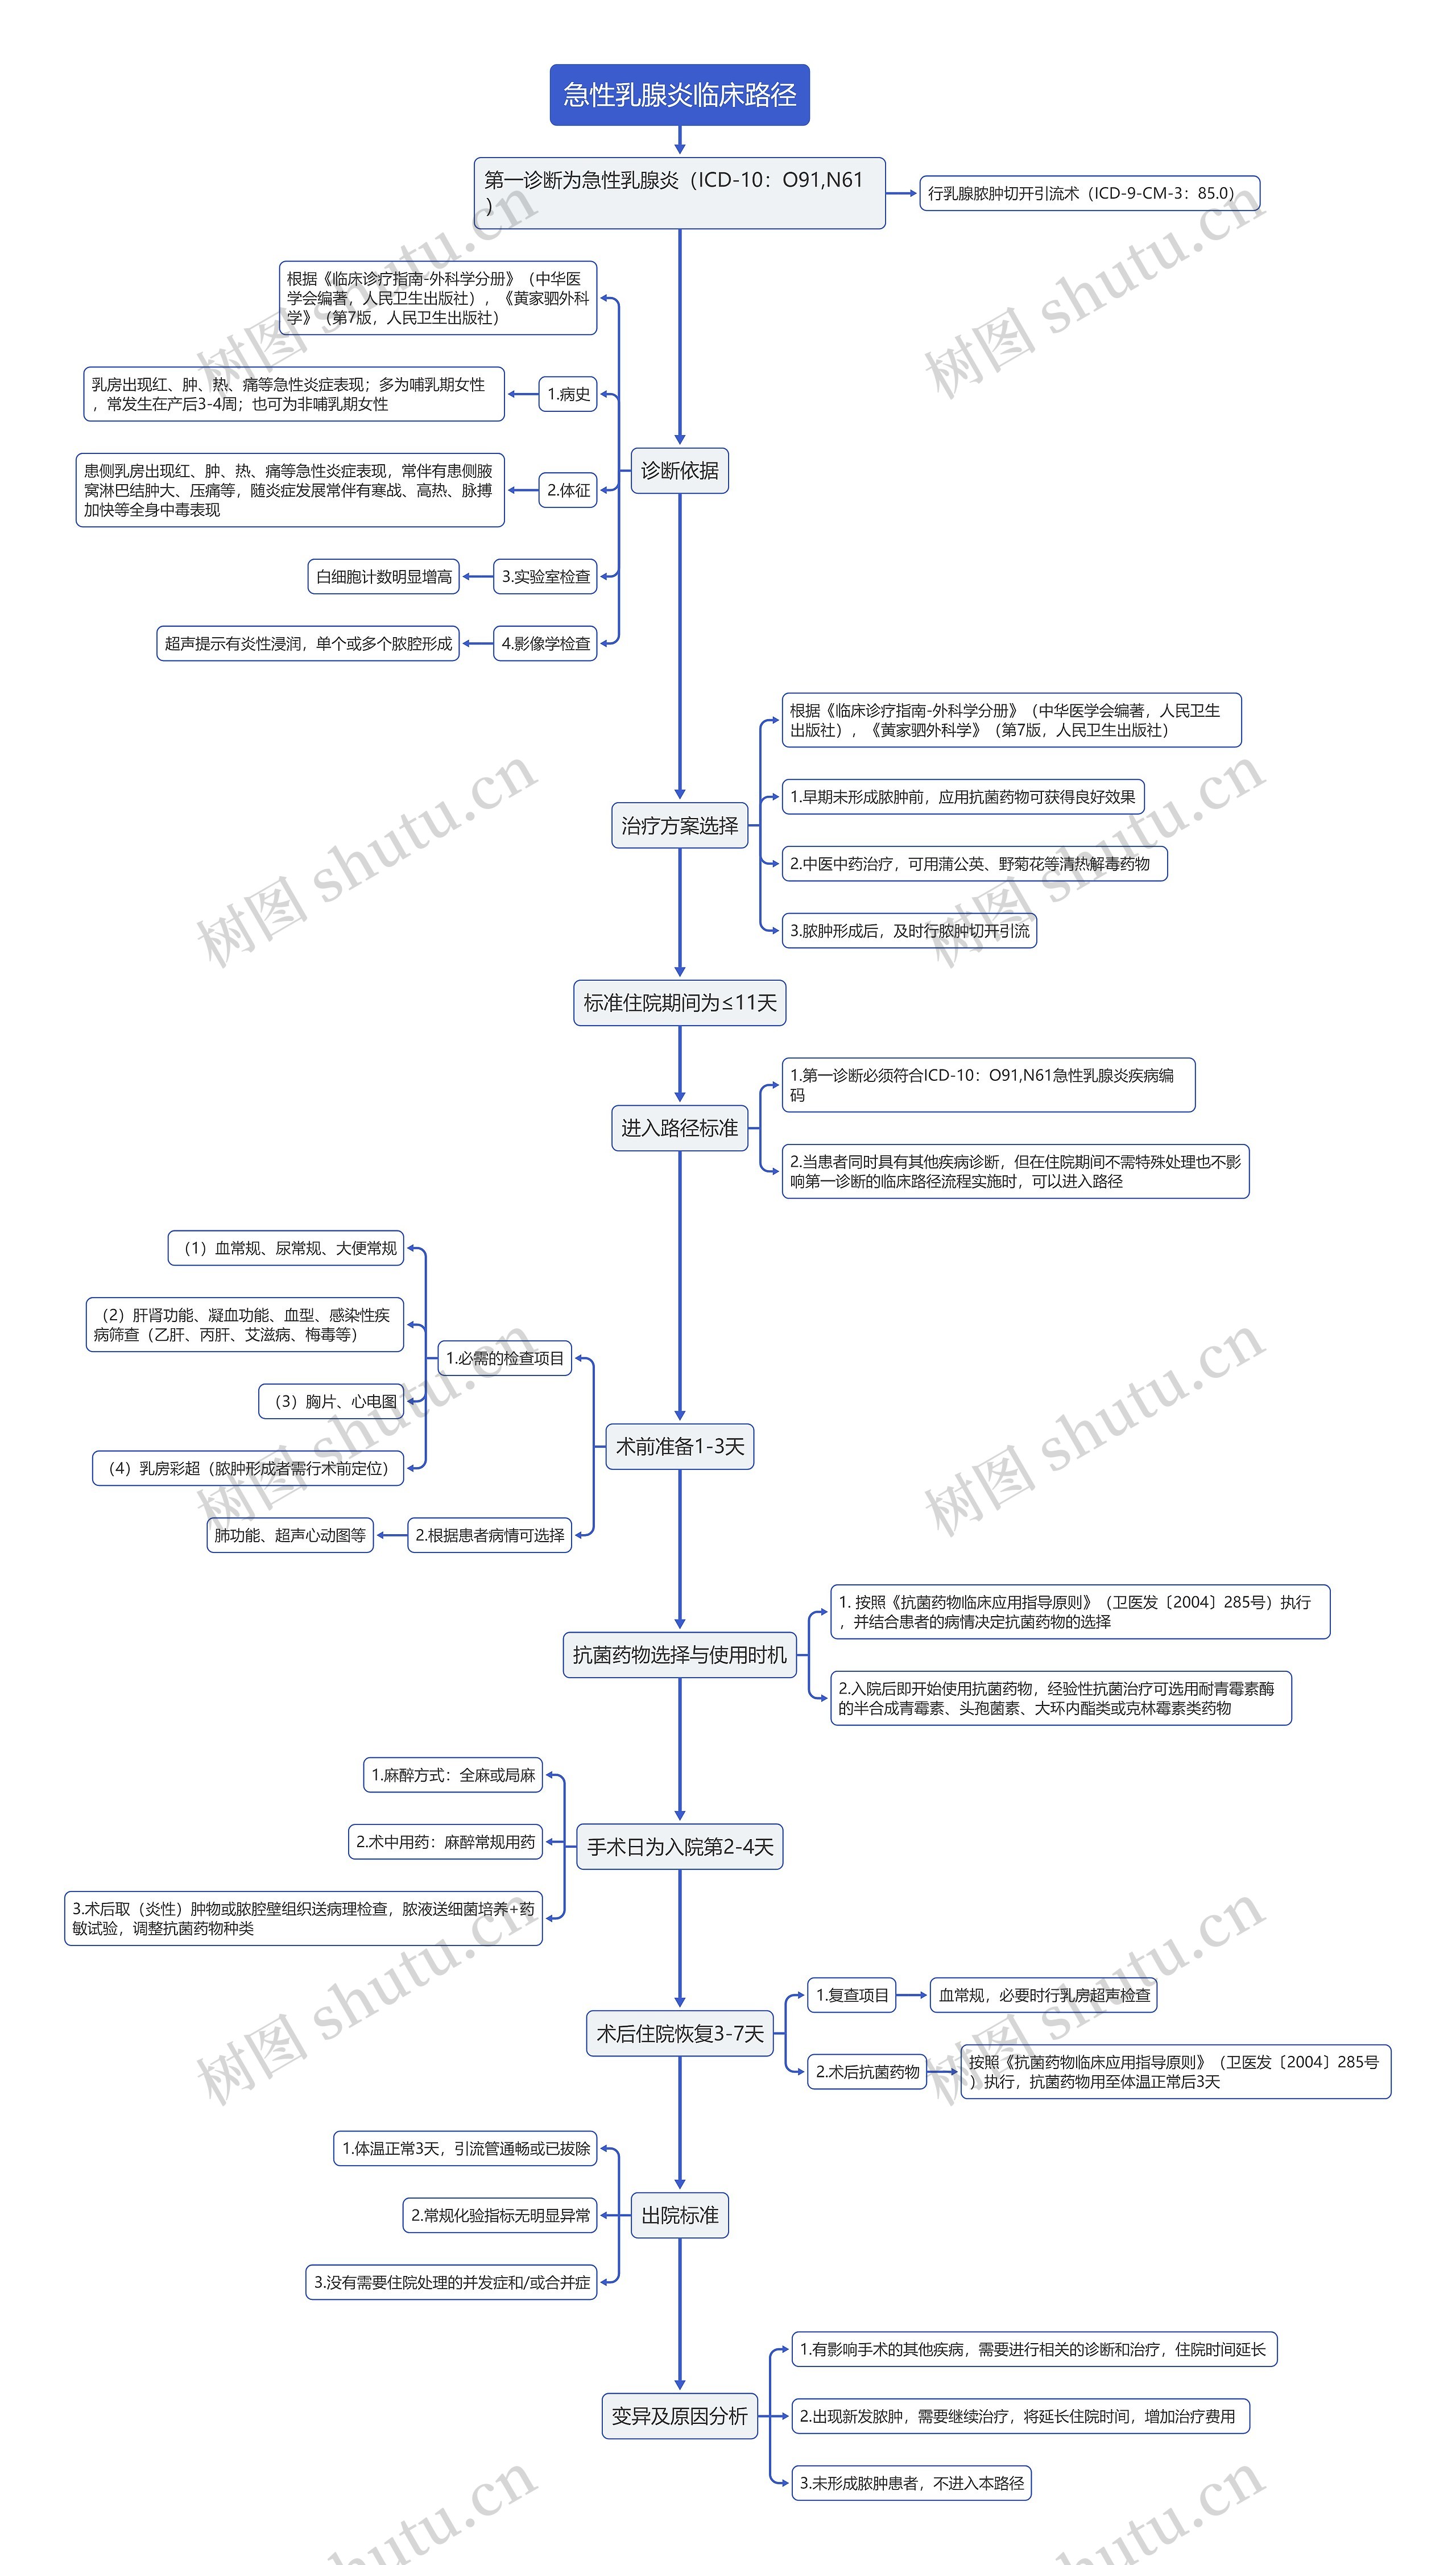 急性乳腺炎临床路径流程图